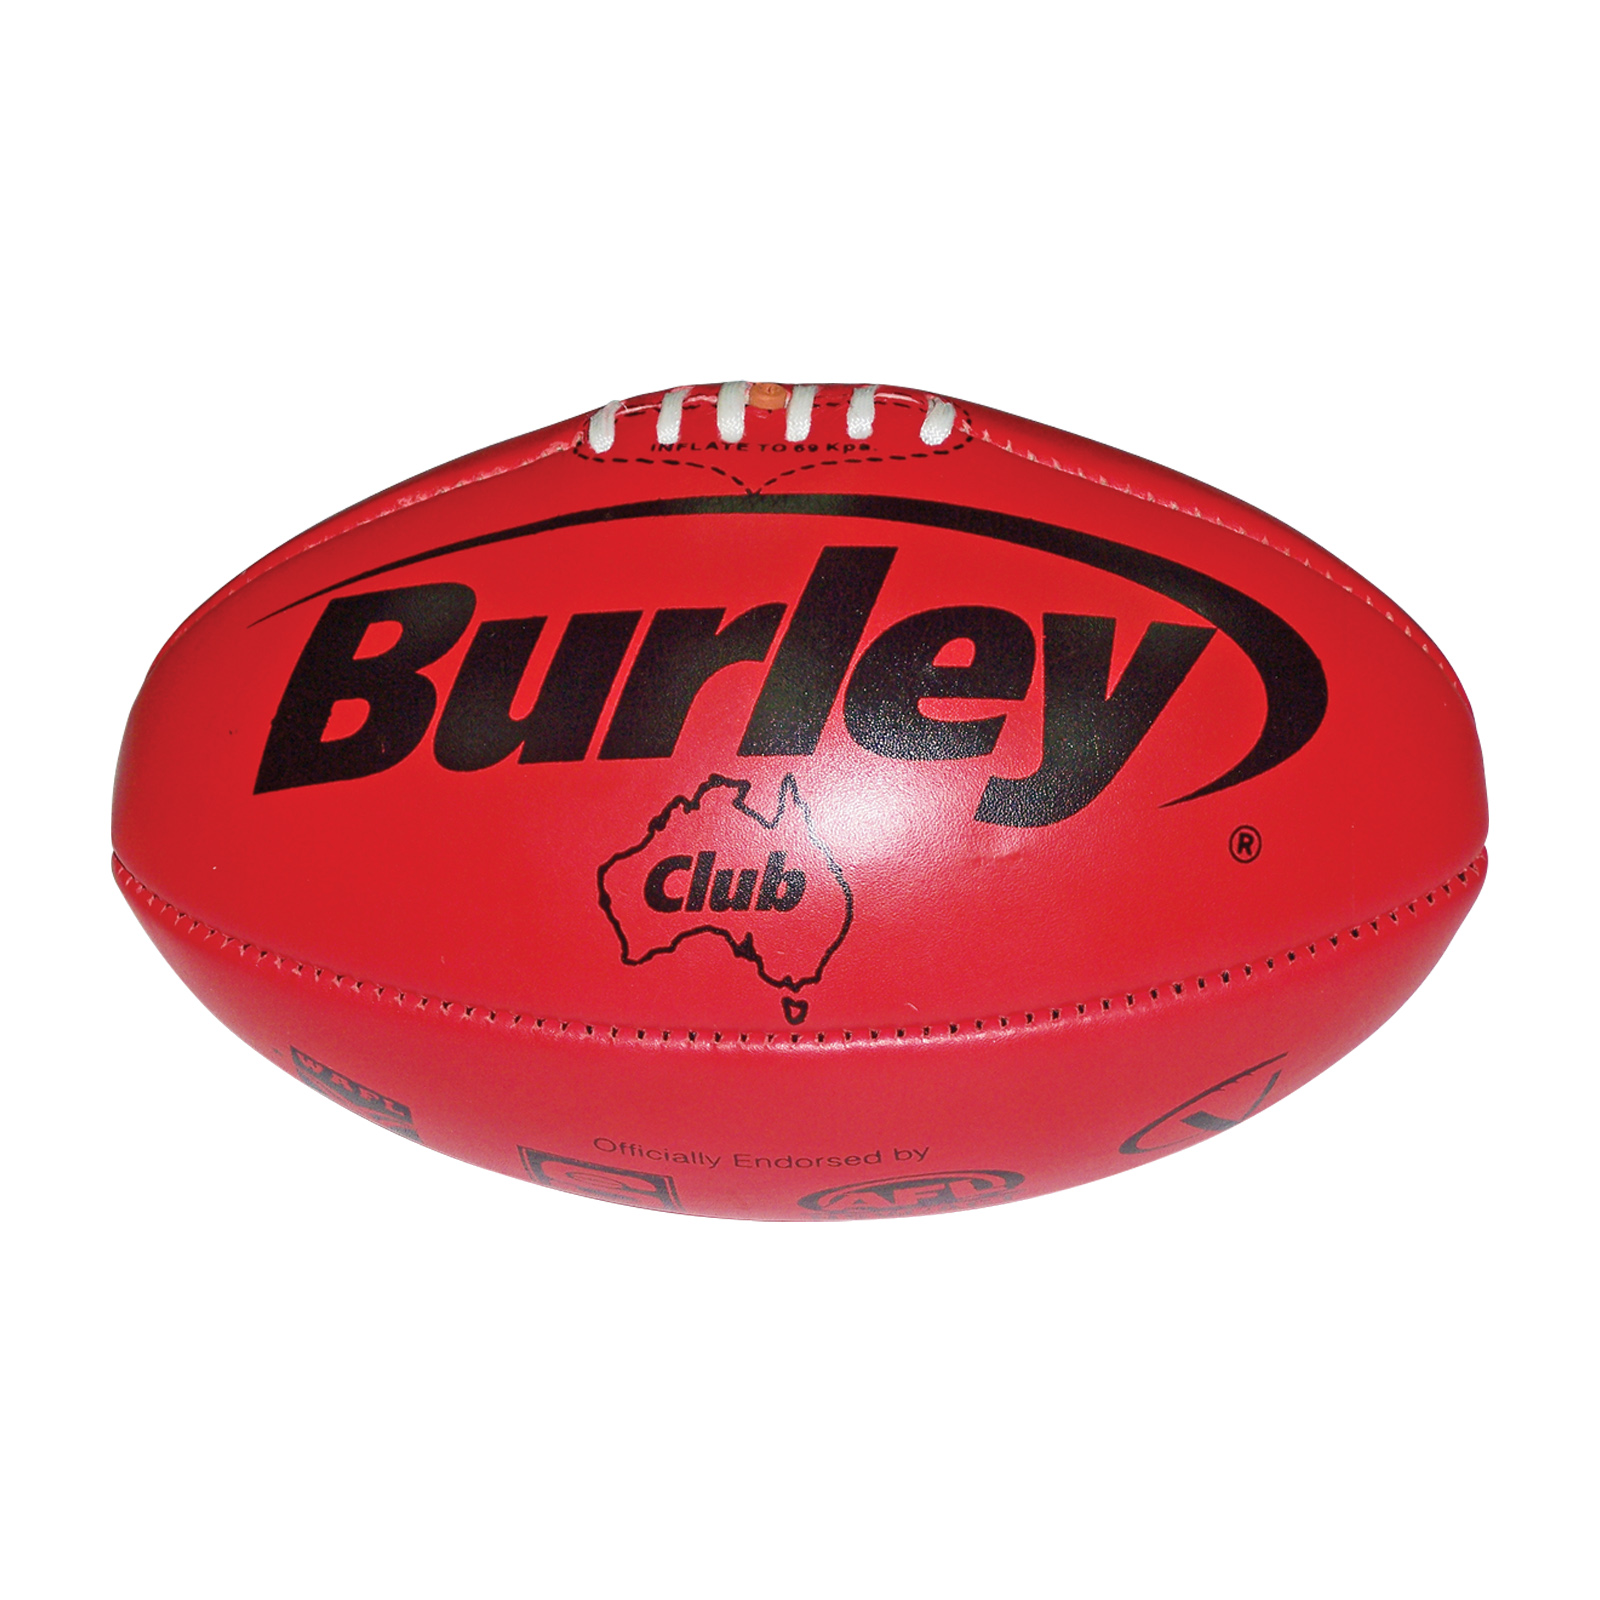 Burley Club Football - Fair Play Sports